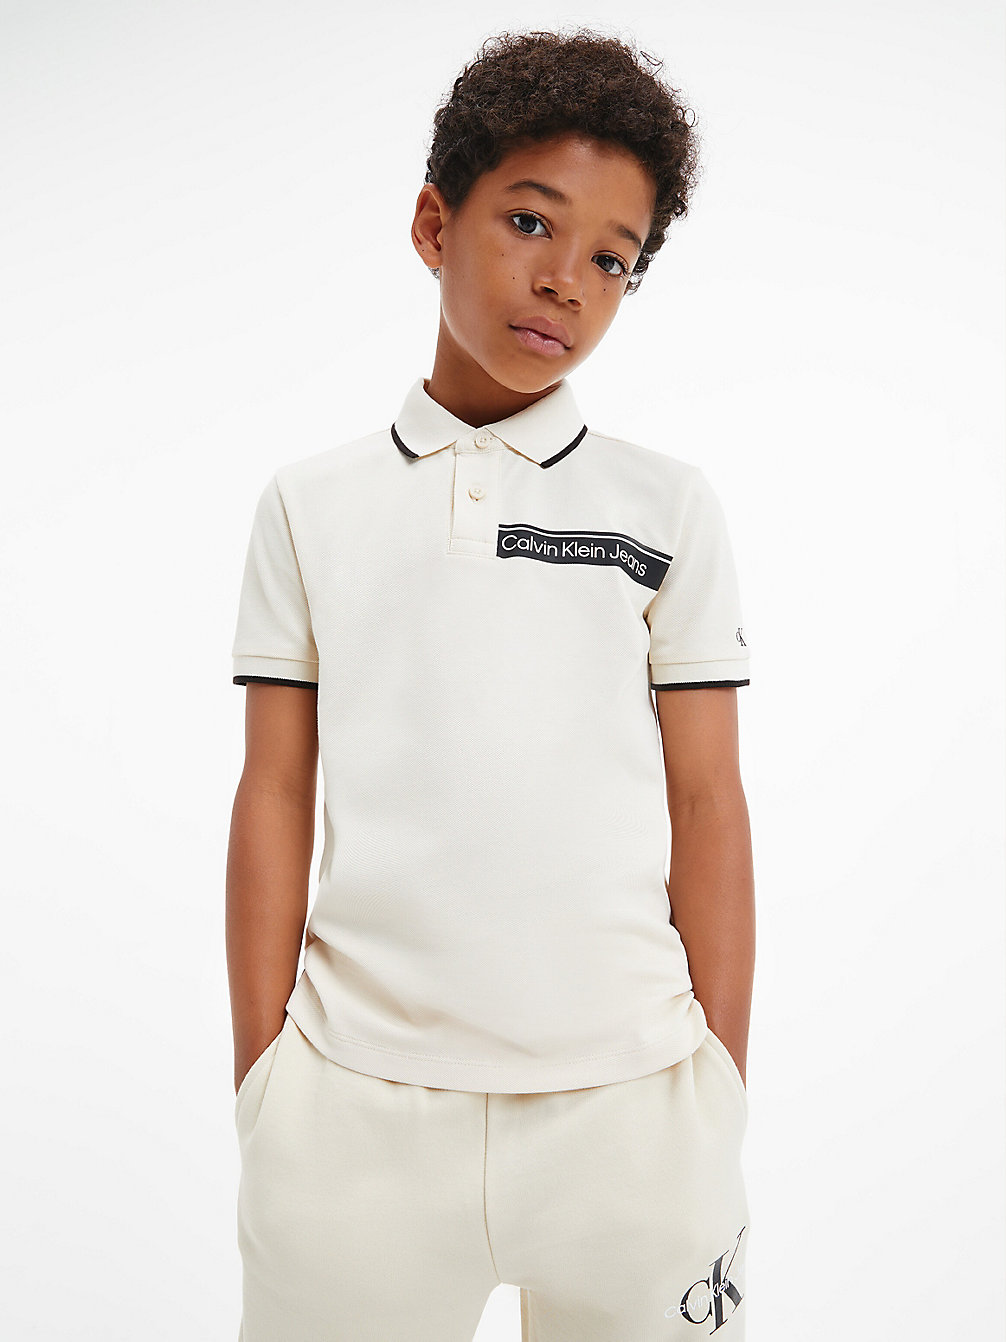 MUSLIN Logo Polo Shirt undefined boys Calvin Klein